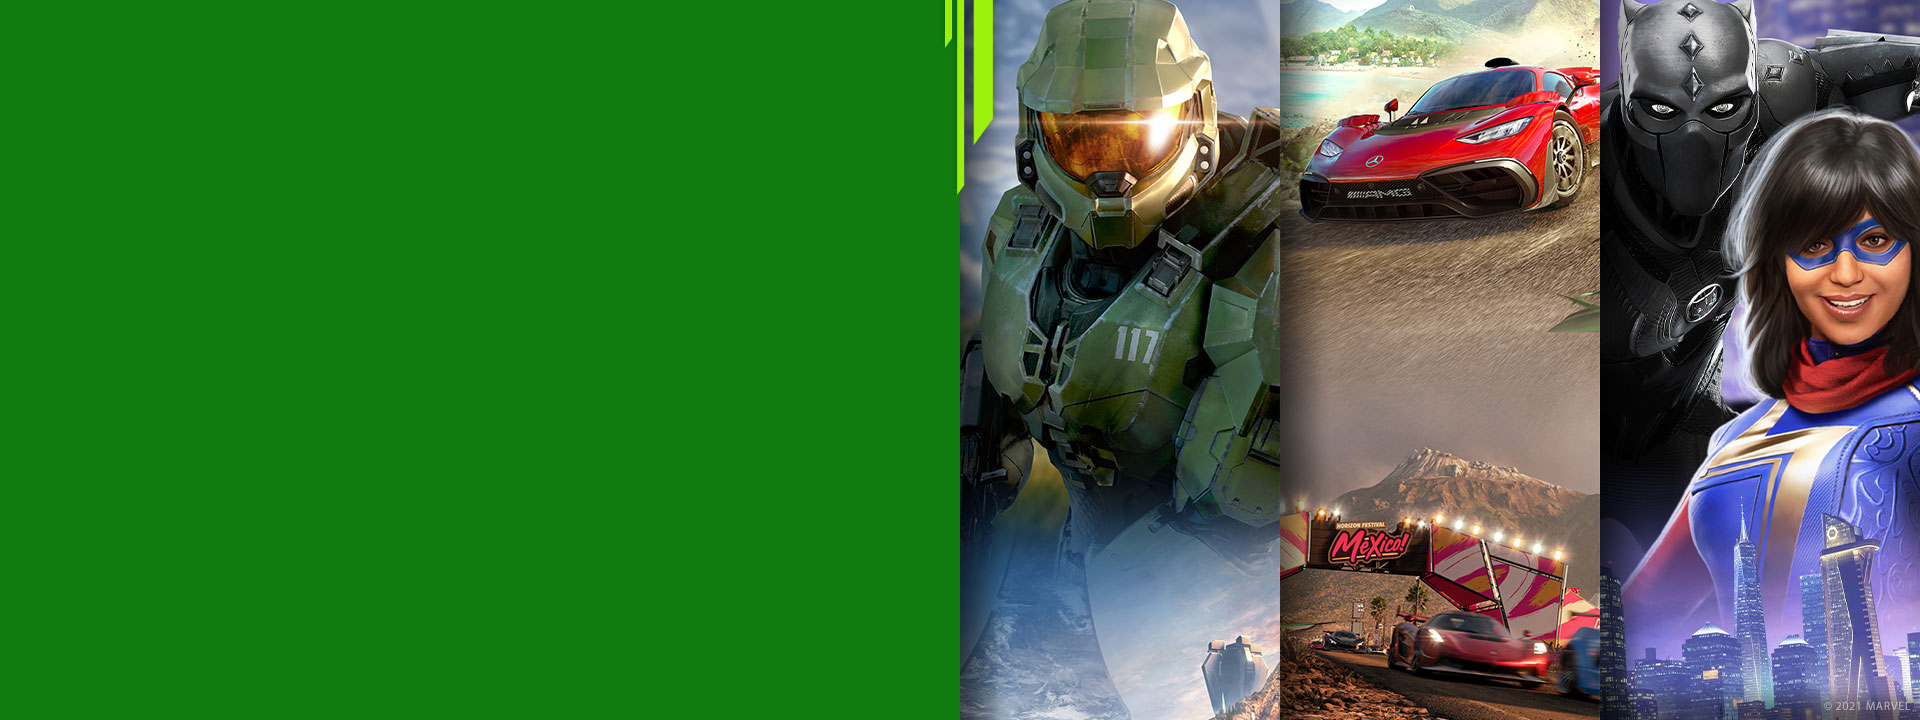 Halo Infinite, Forza Horizon 5 ve Marvel's Avengers'tan farklı Xbox oyun karakterlerinin önden görünümü.